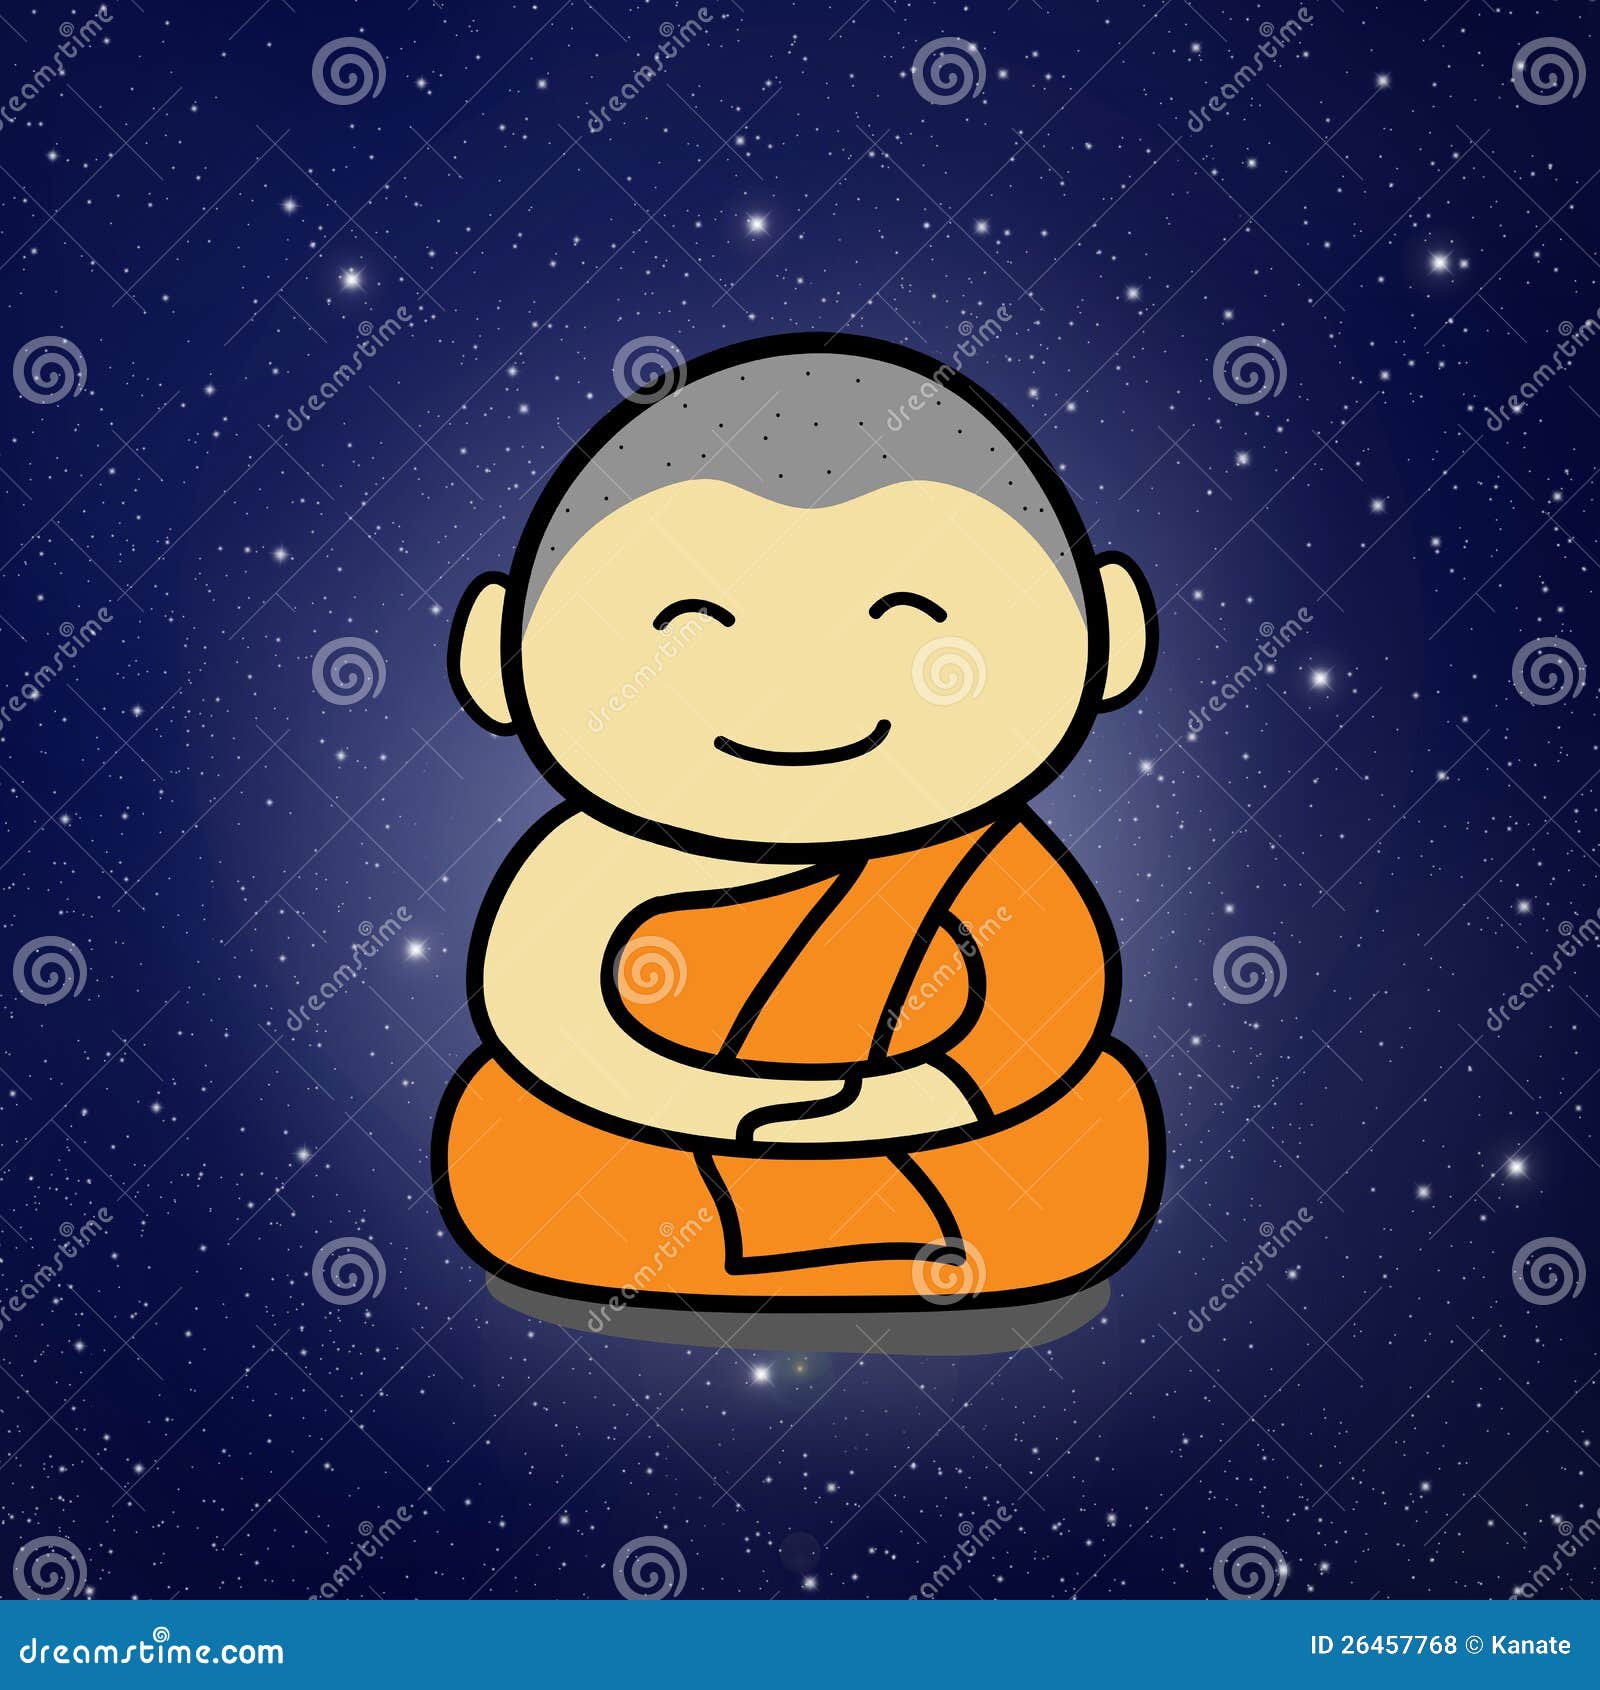 Buddhist Monk cartoon stock illustration. Illustration of circle - 26457768